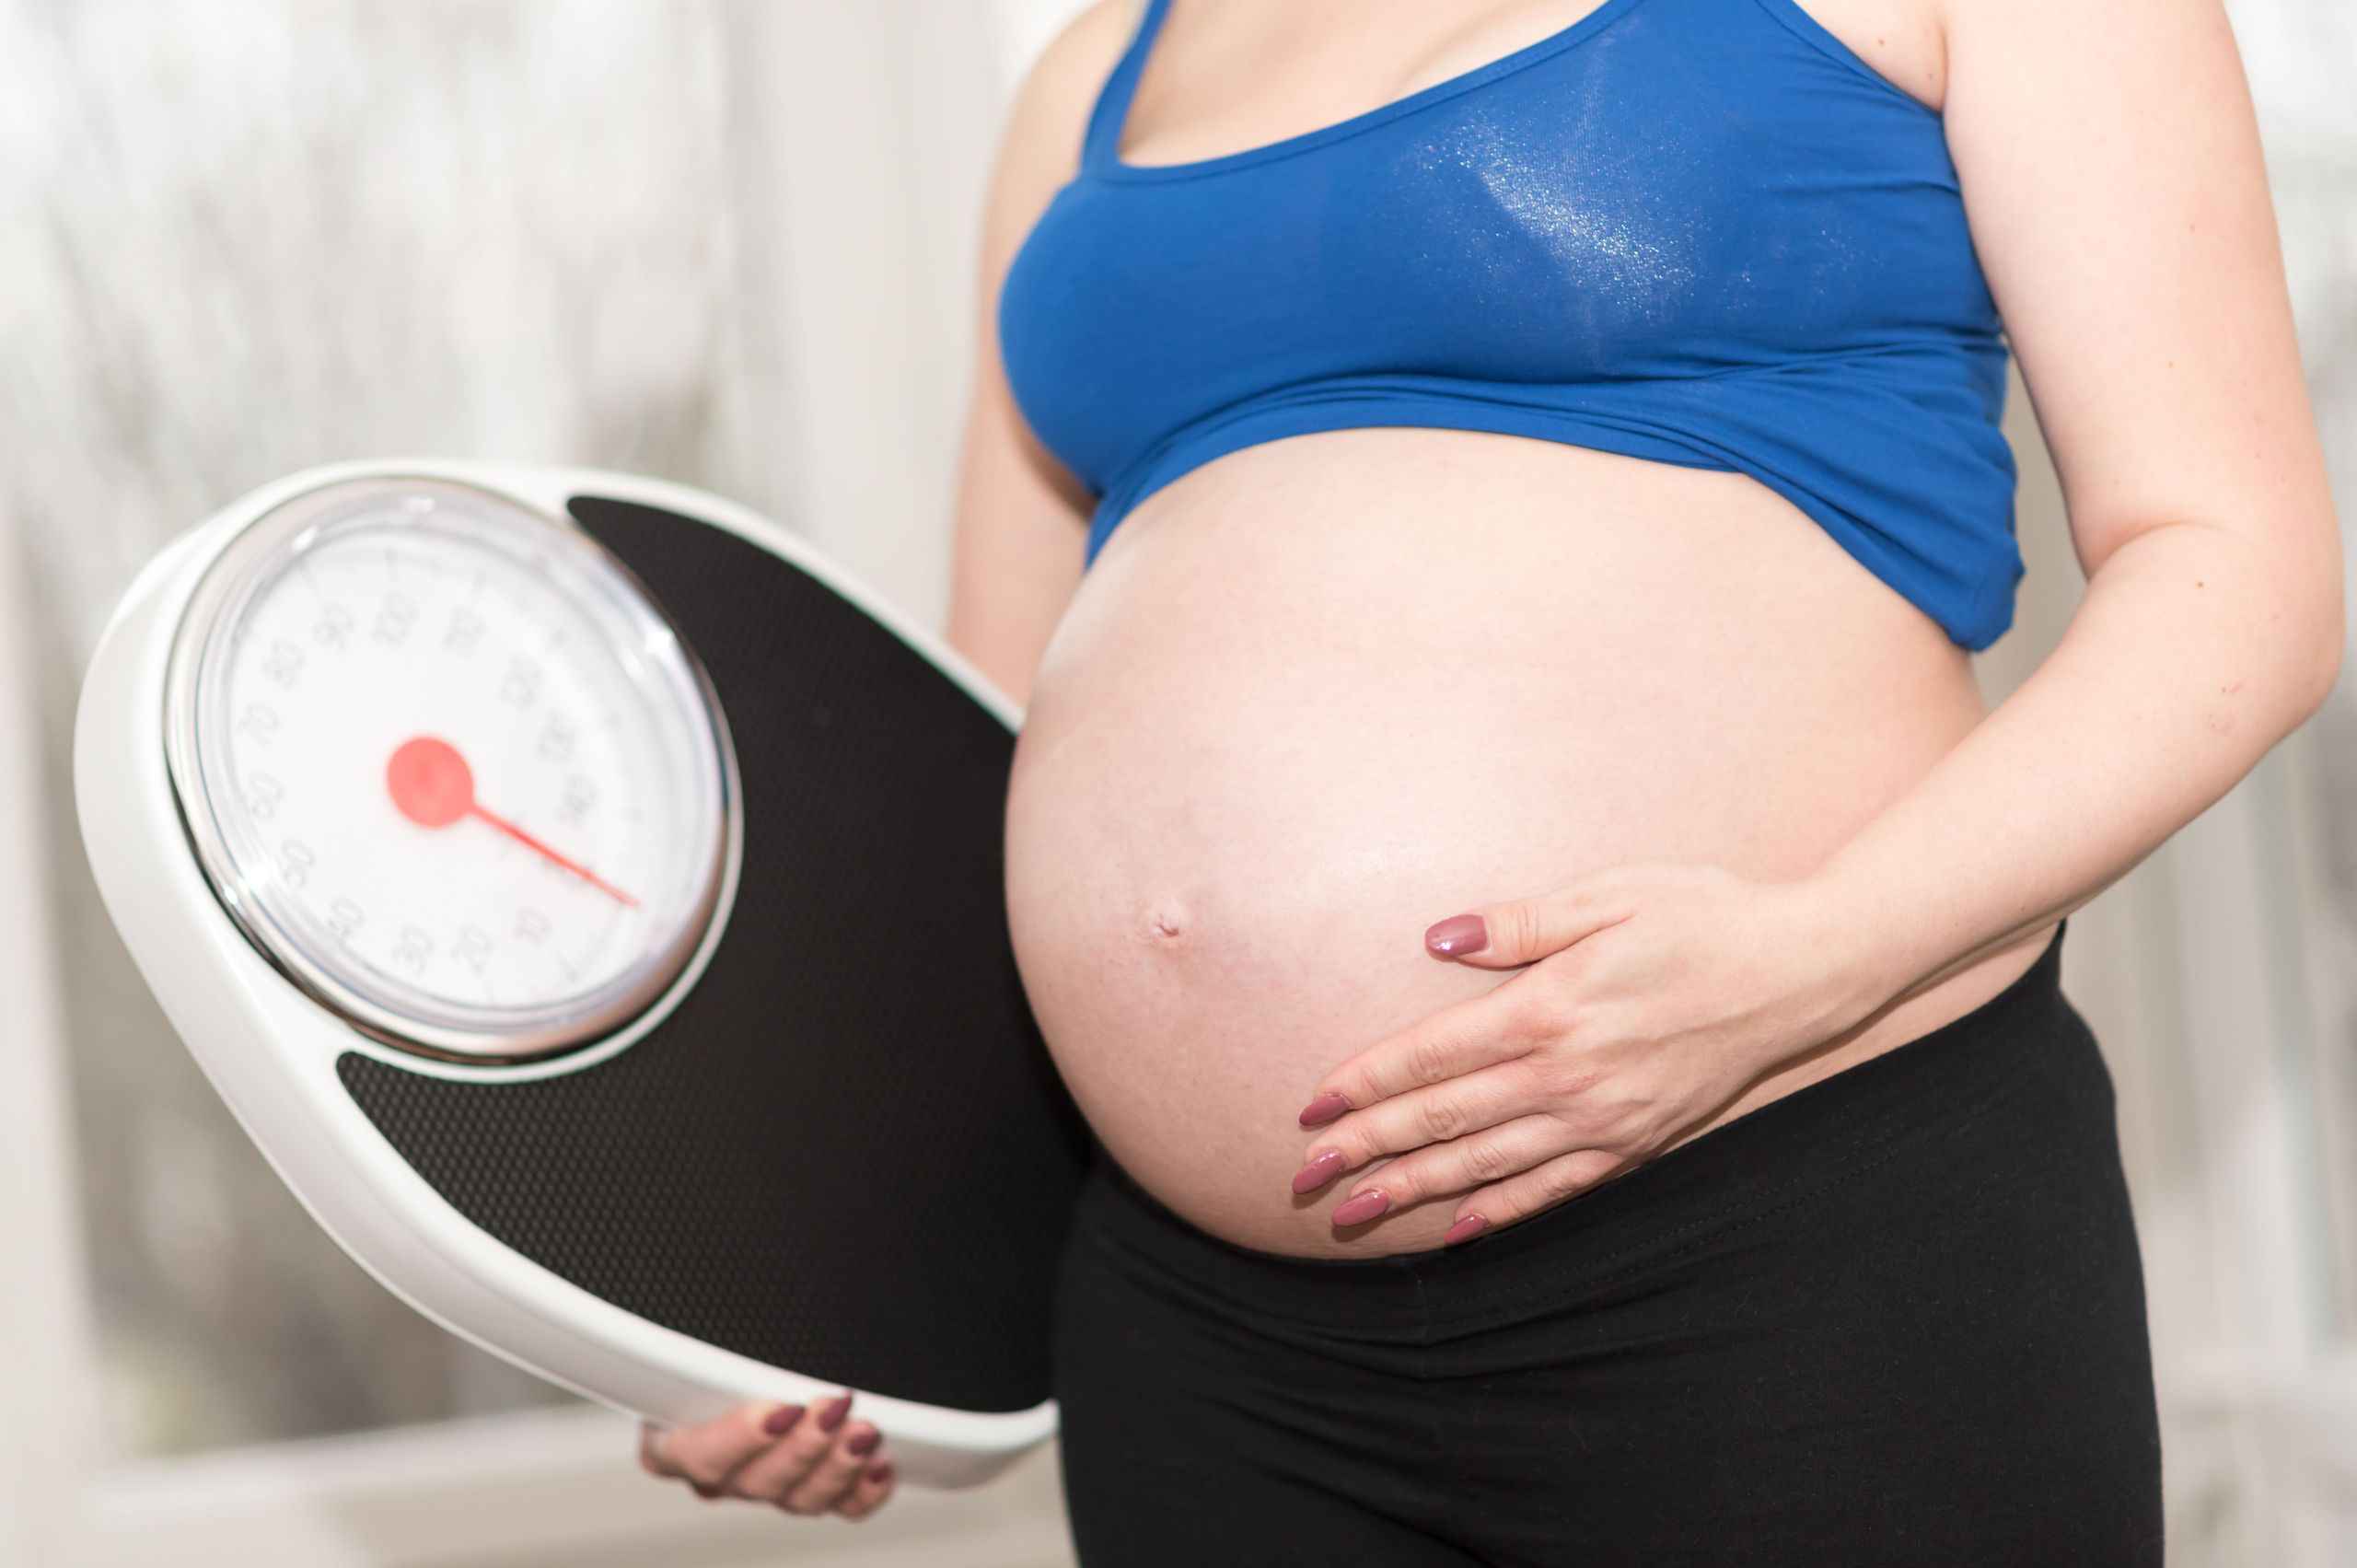 berapa kenaikan berat badan ibu hamil